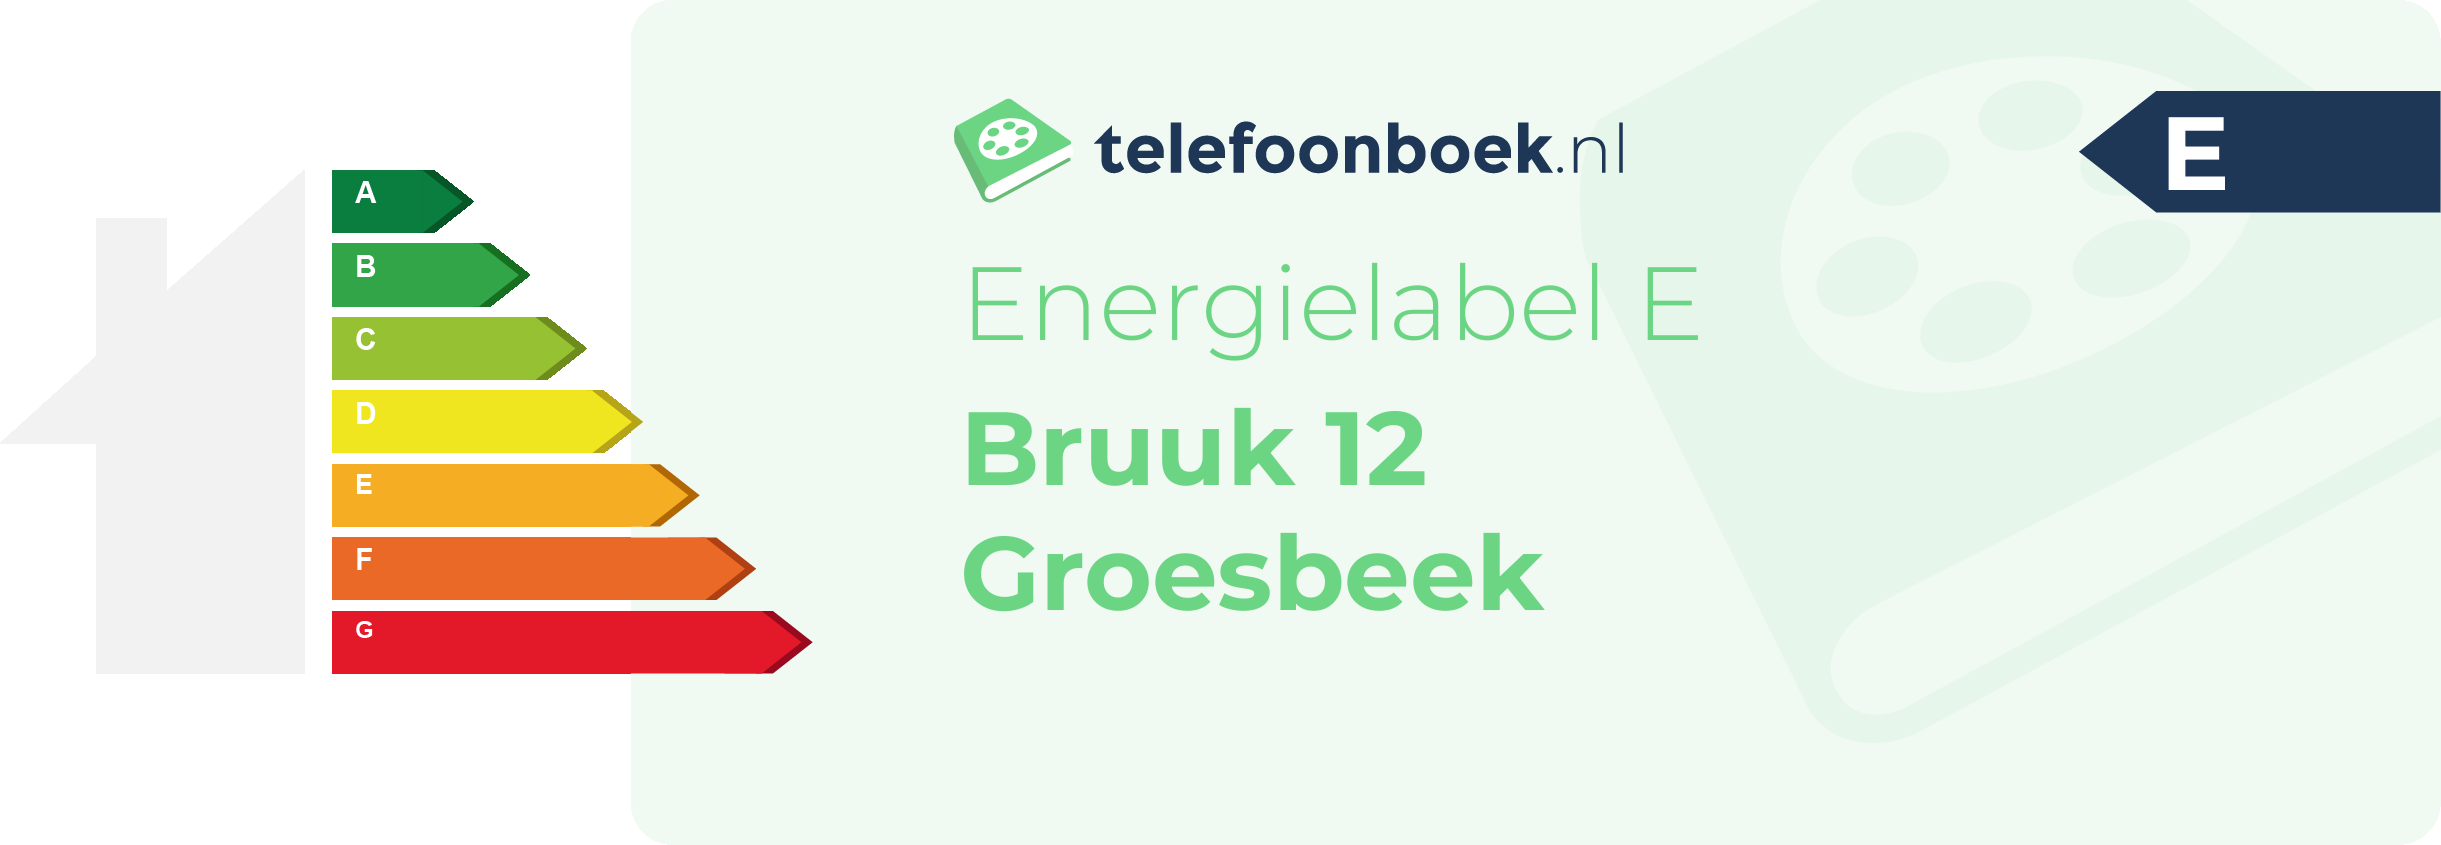 Energielabel Bruuk 12 Groesbeek